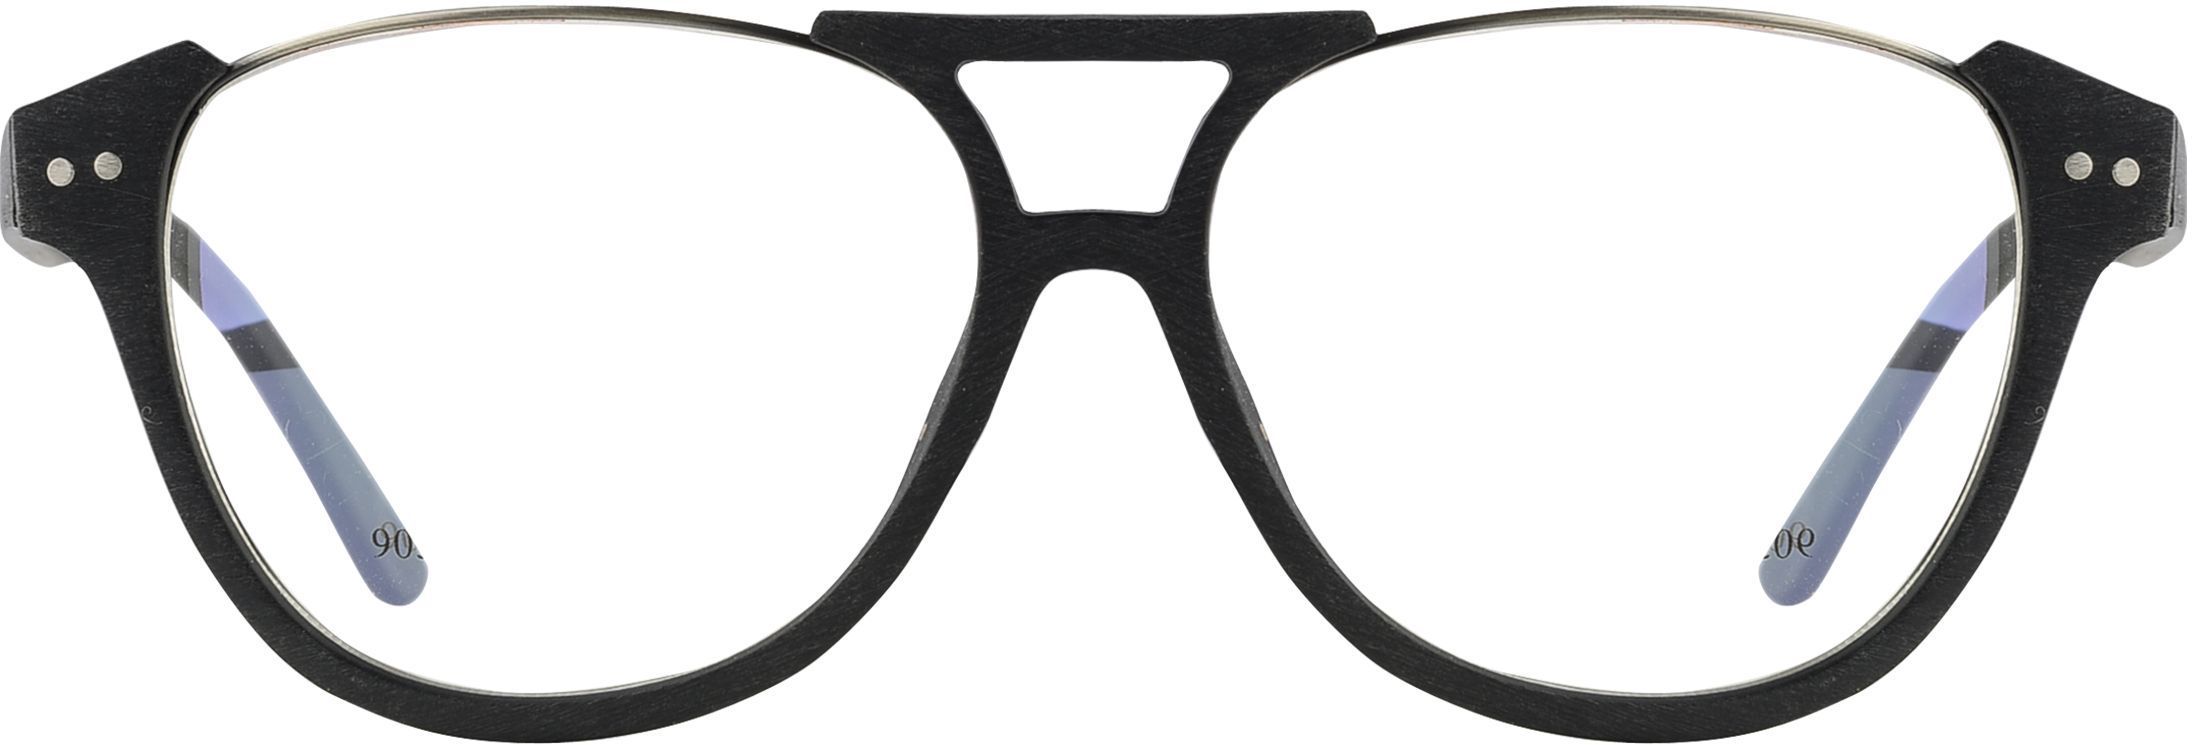 my glasses